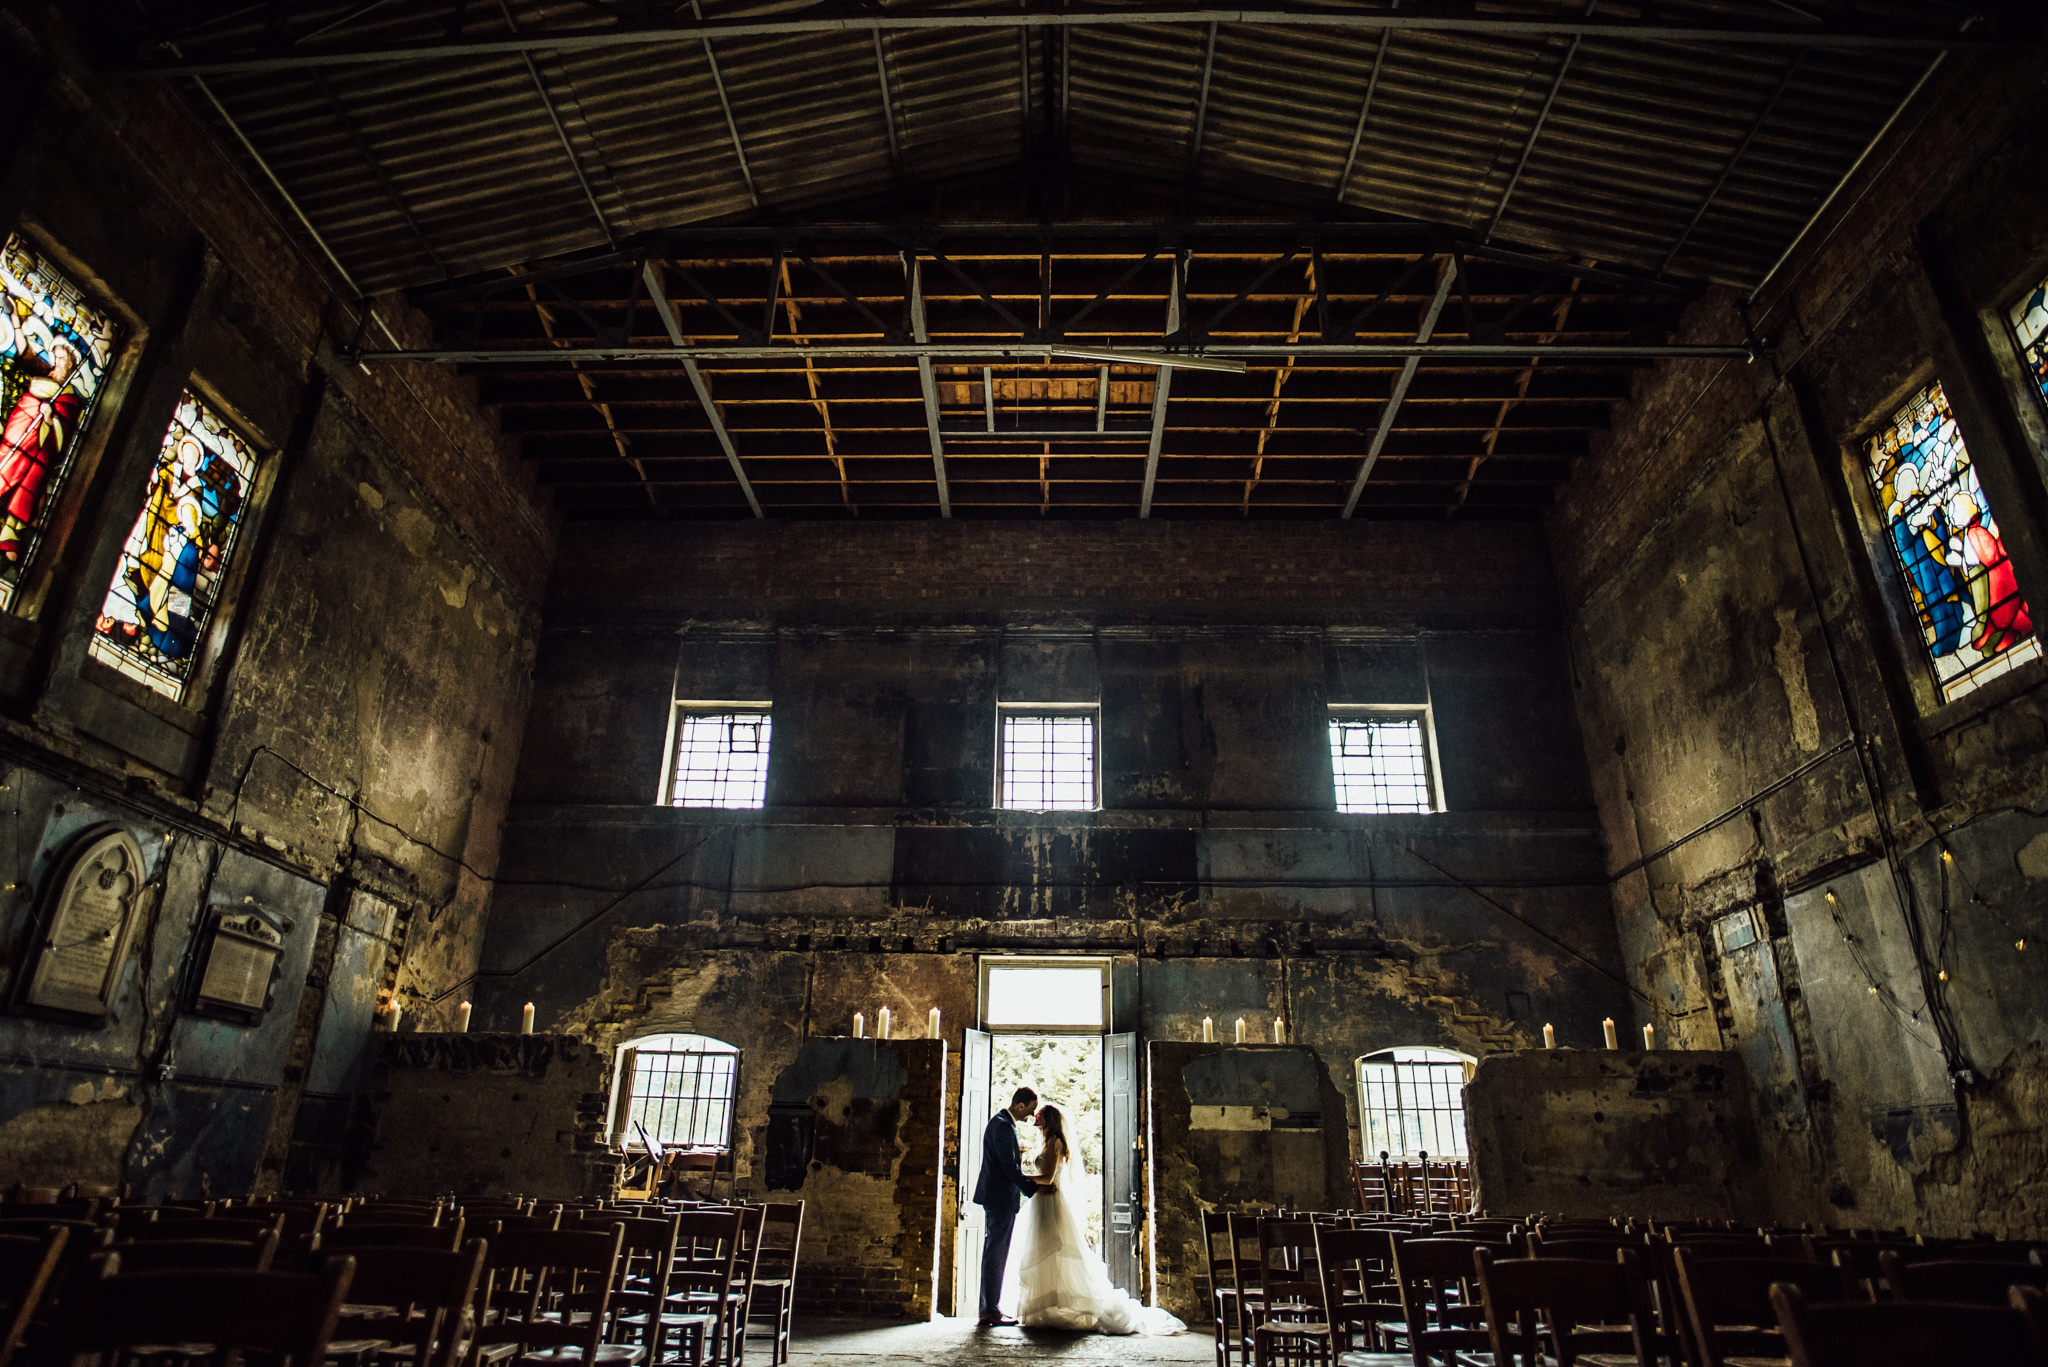 asylum chapel wedding, michelle wood photographer, london wedding photographer, creative wedding photographer